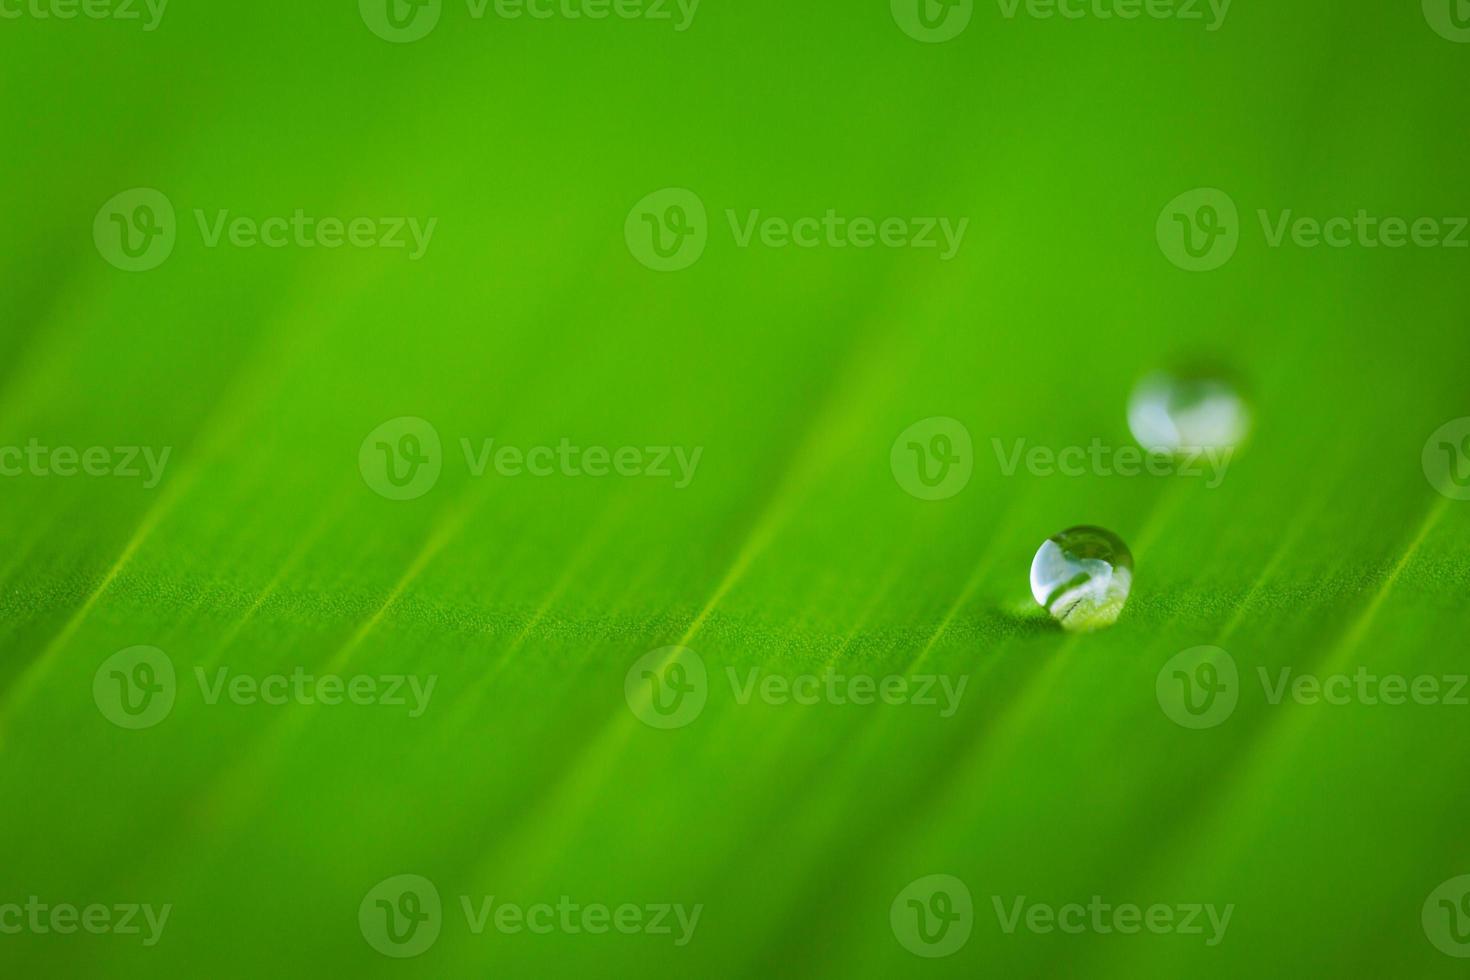 släpp vatten på grönt foto